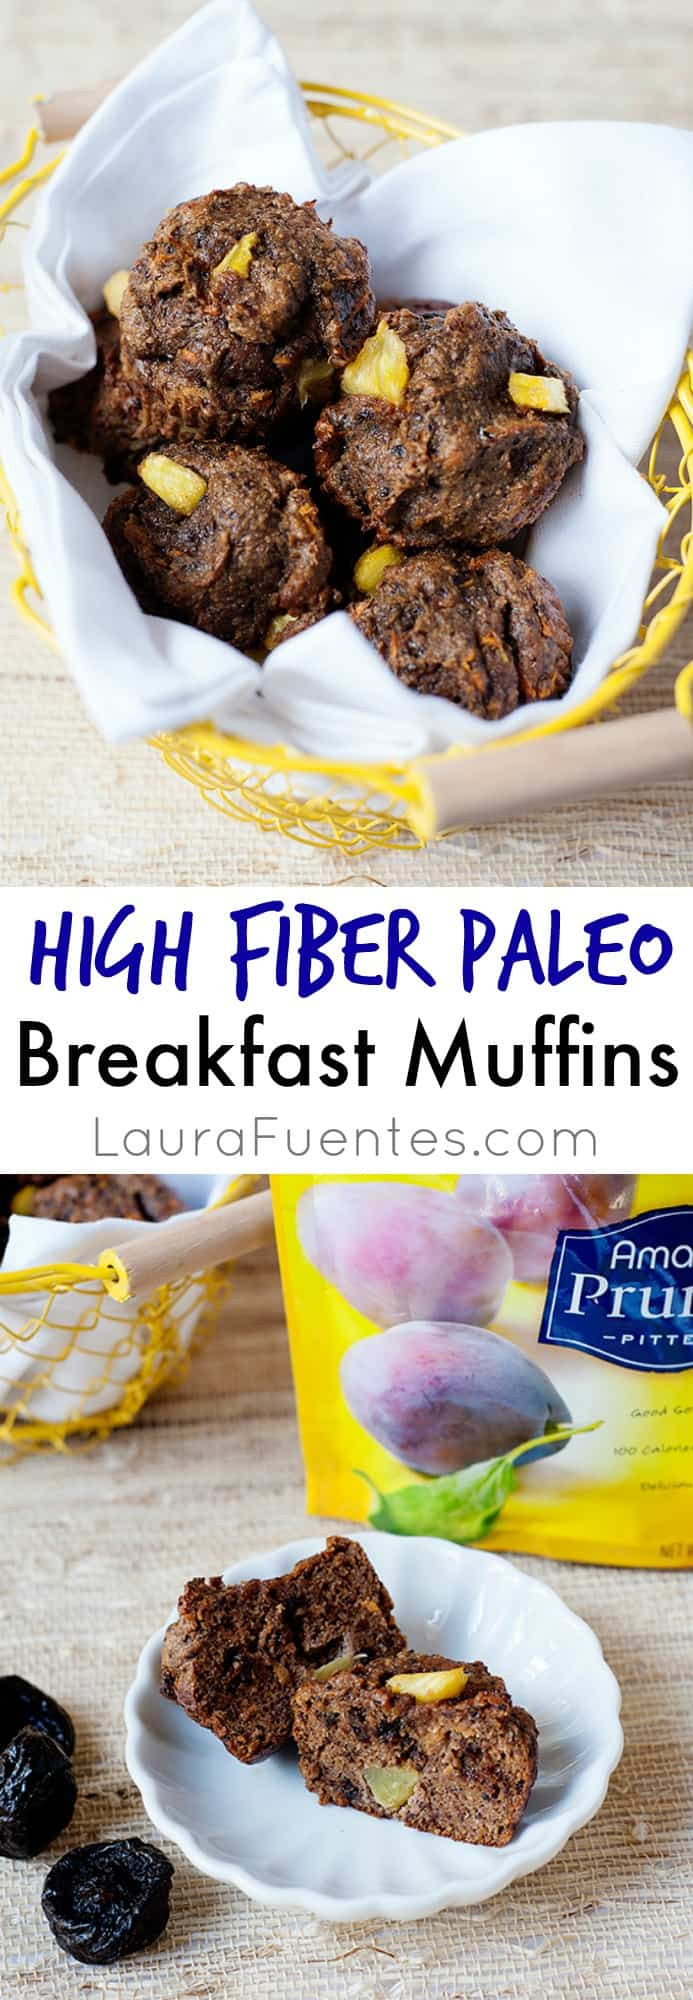 High Fiber Muffin Recipes
 High Fiber Paleo Breakfast Muffins